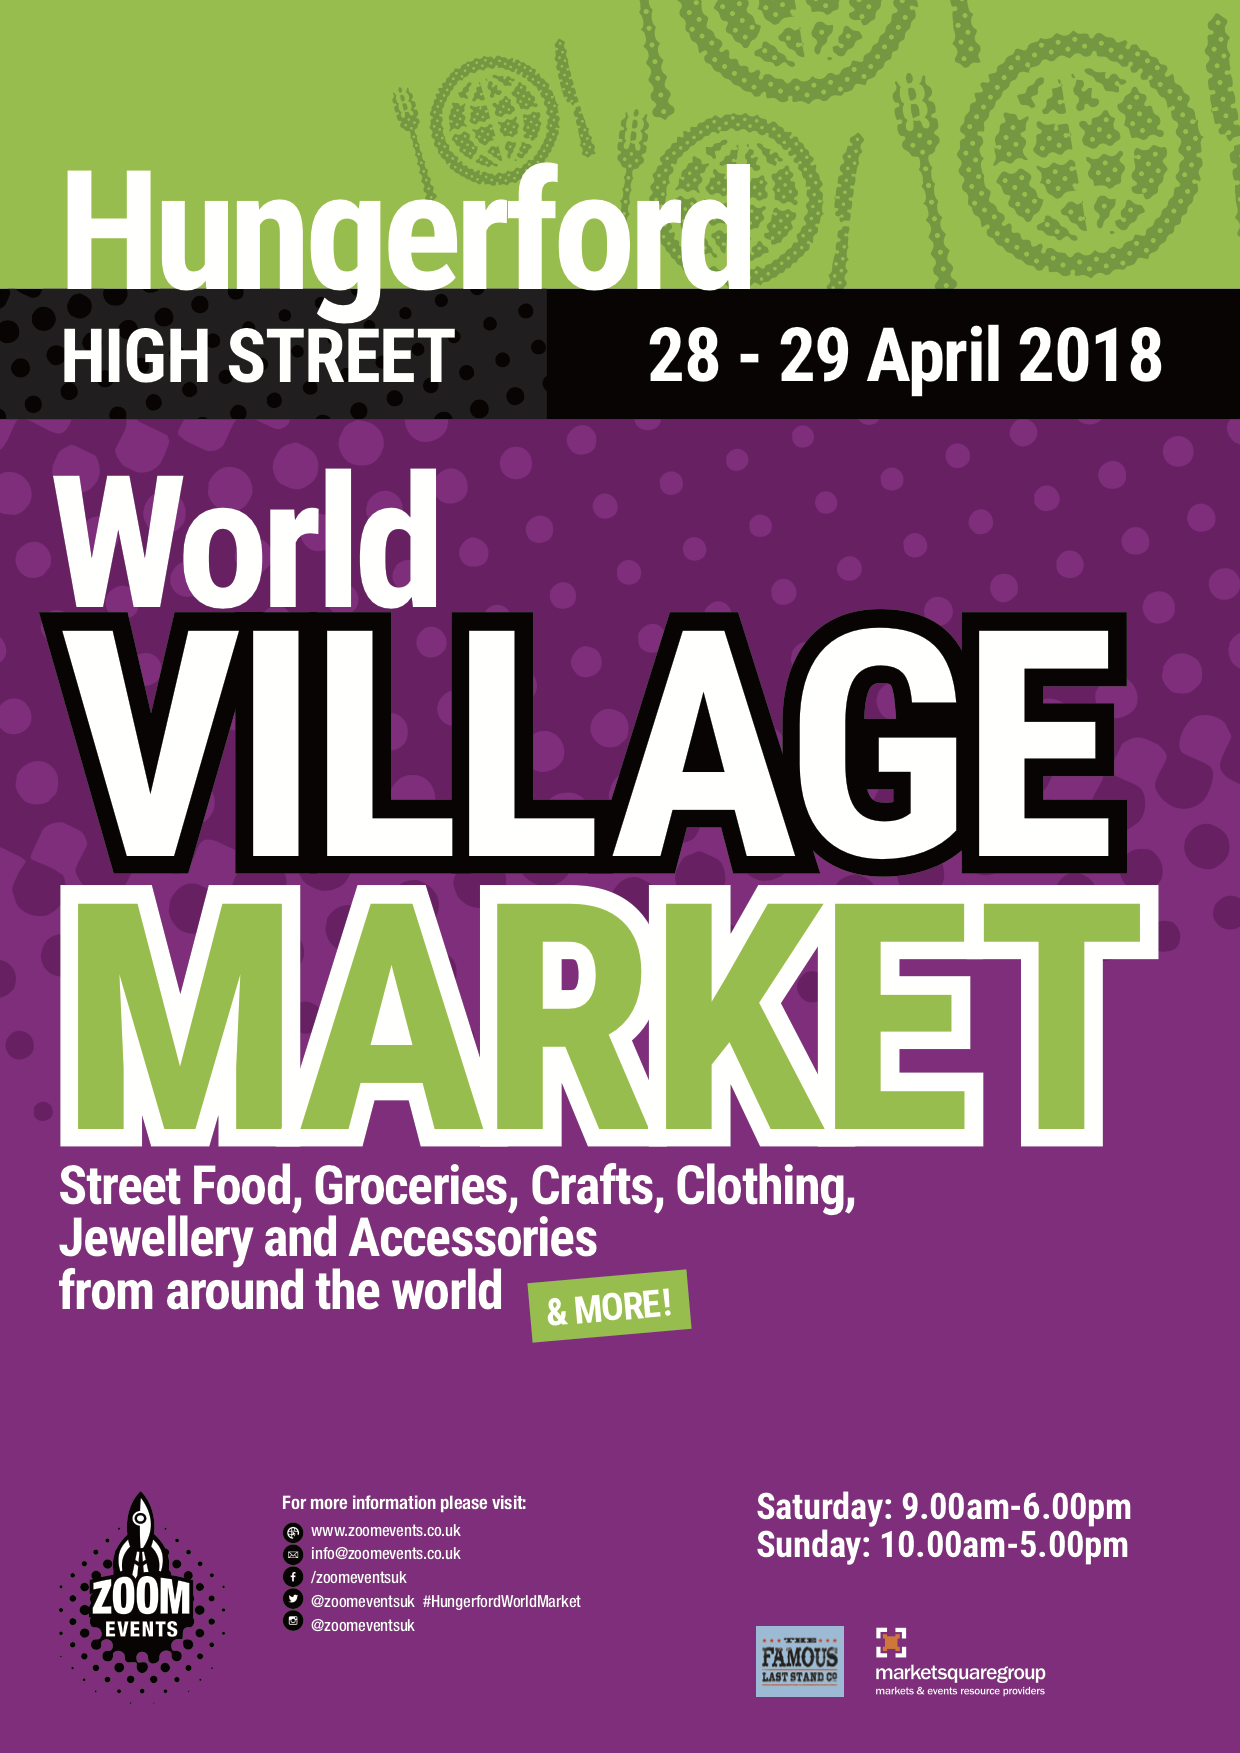 Hungerford World Village Market